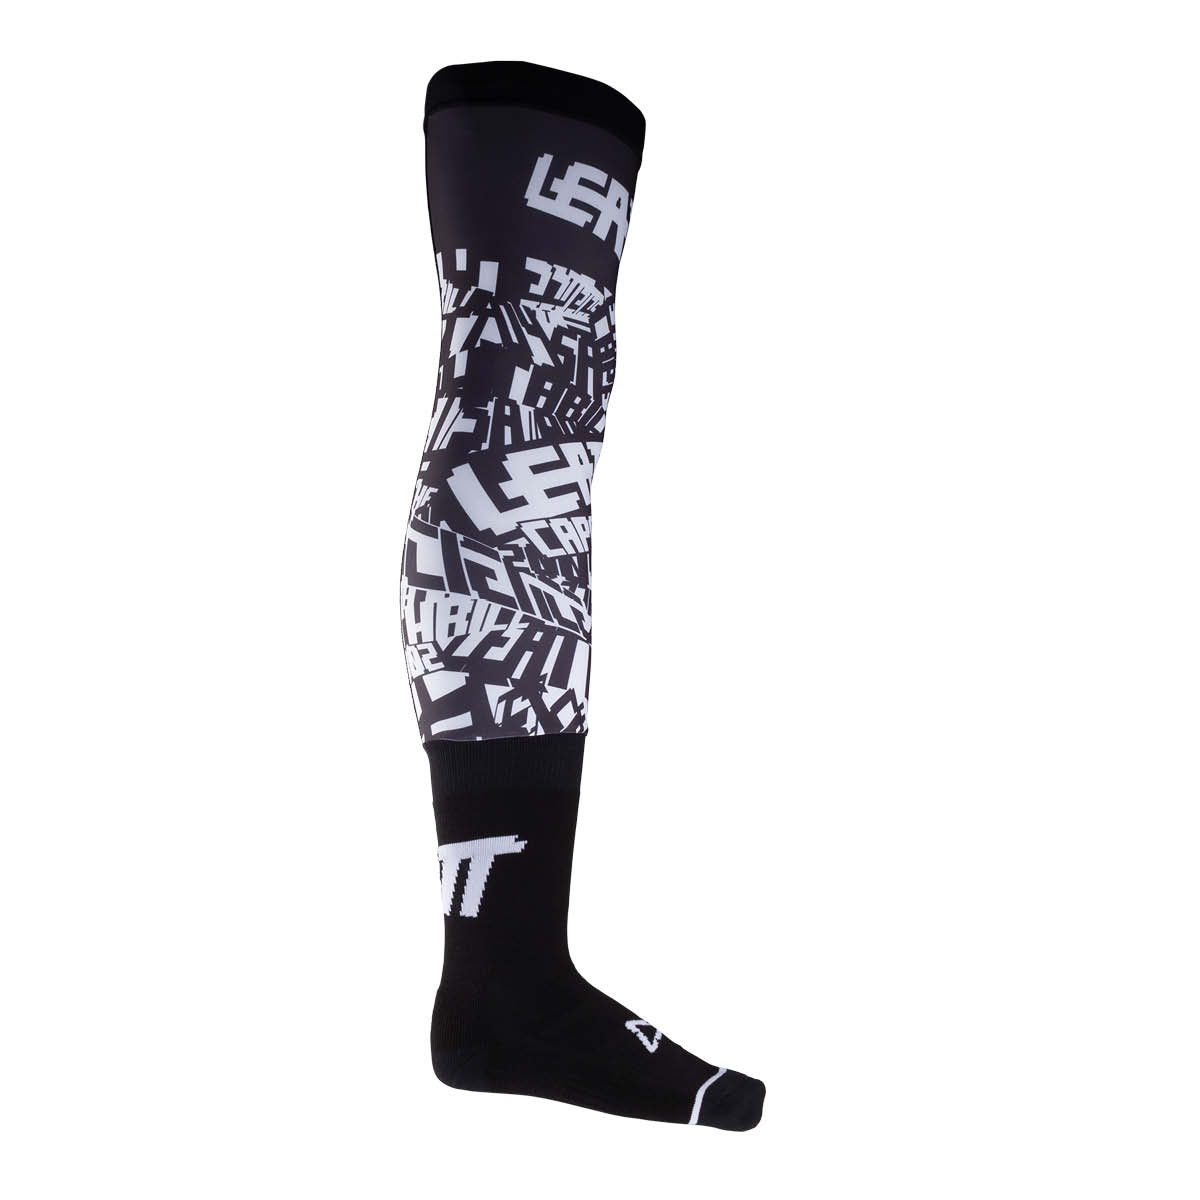 LEATT Knee Brace Socken, schwarz/weiss